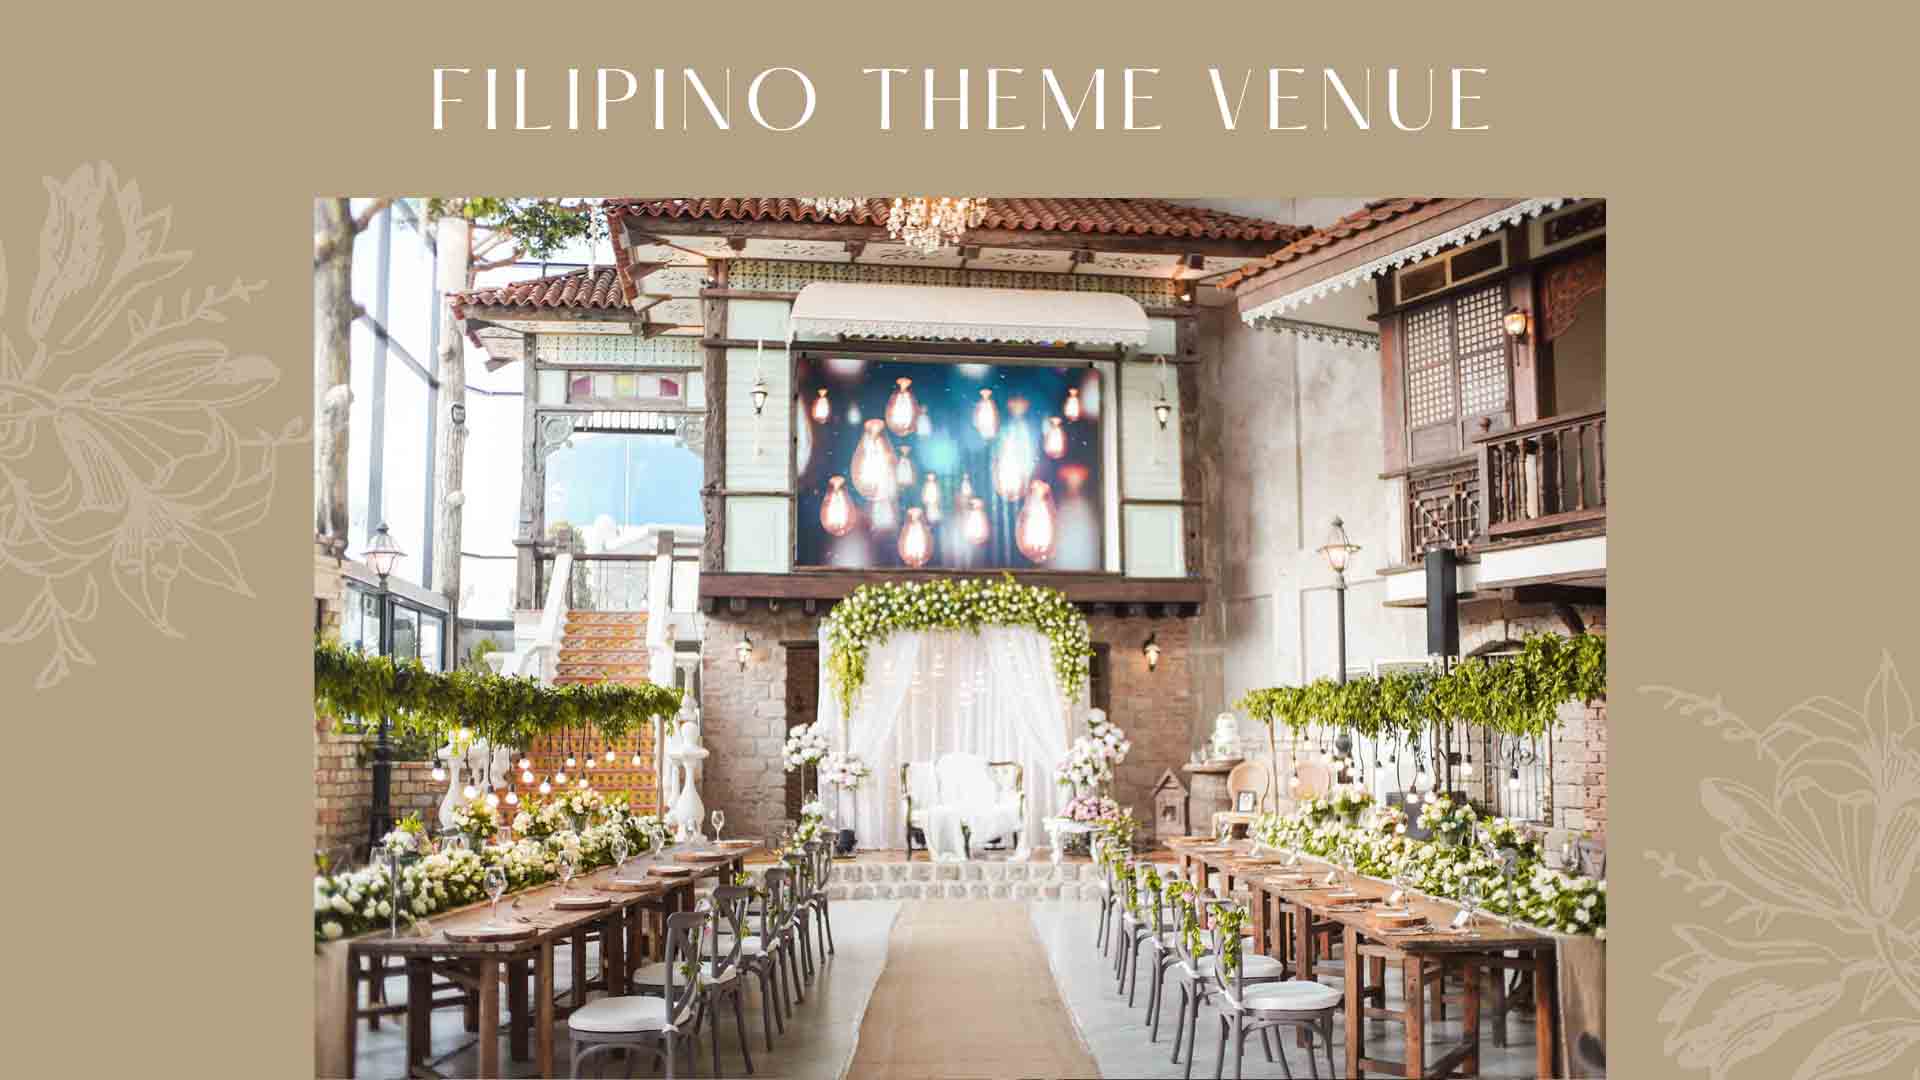 4 Major Keys For Your Filipiniana Themed Wedding 